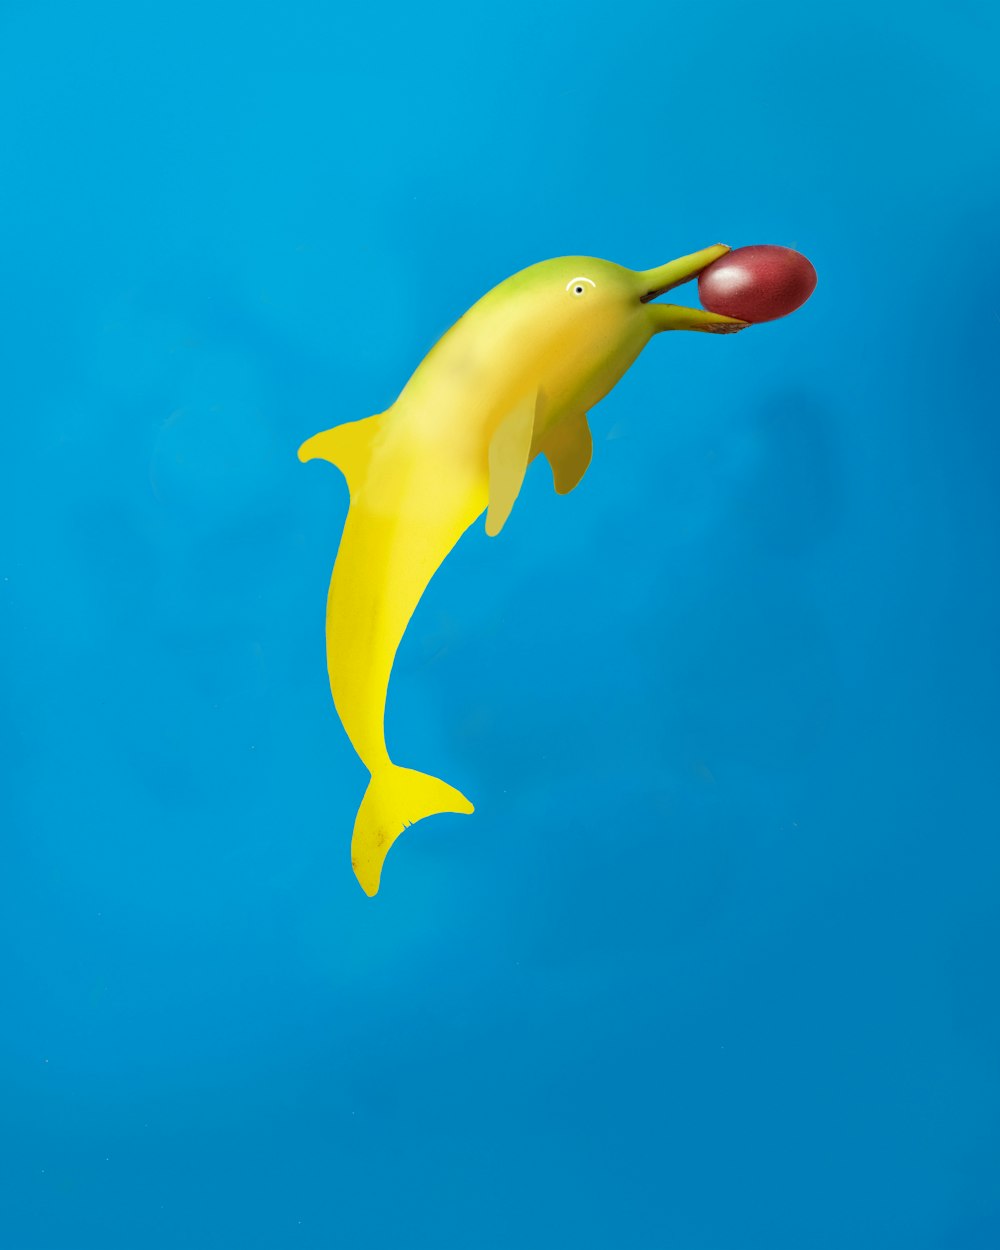 Un delfín de plástico amarillo flotando en el aire